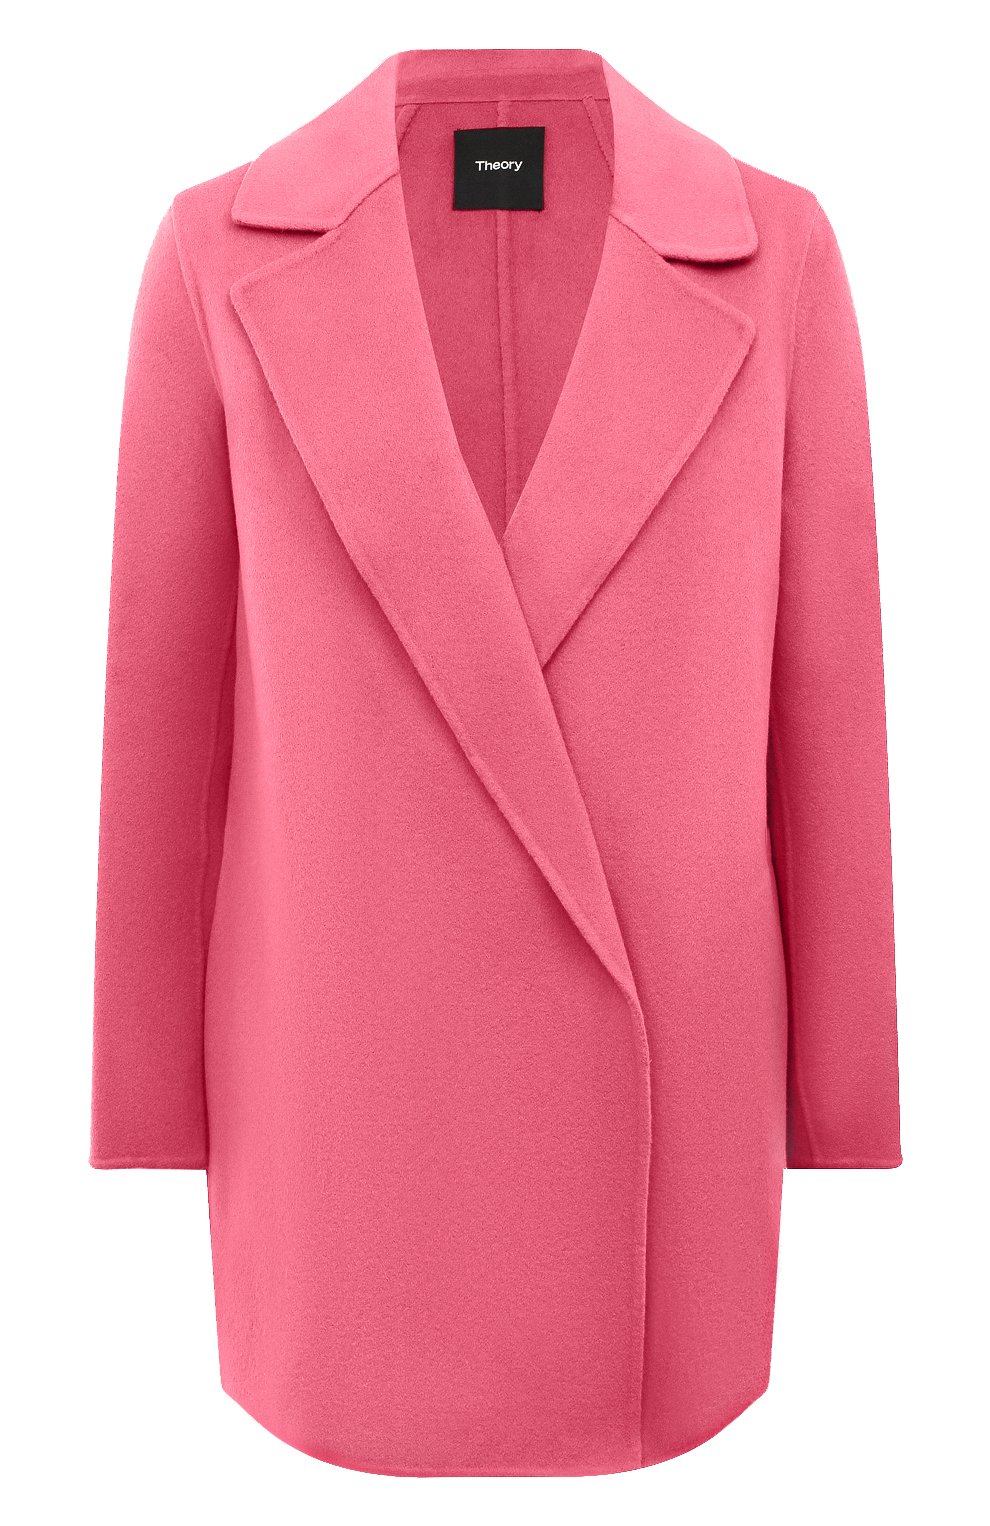 С чем носить розовое пальто – советы стилистов